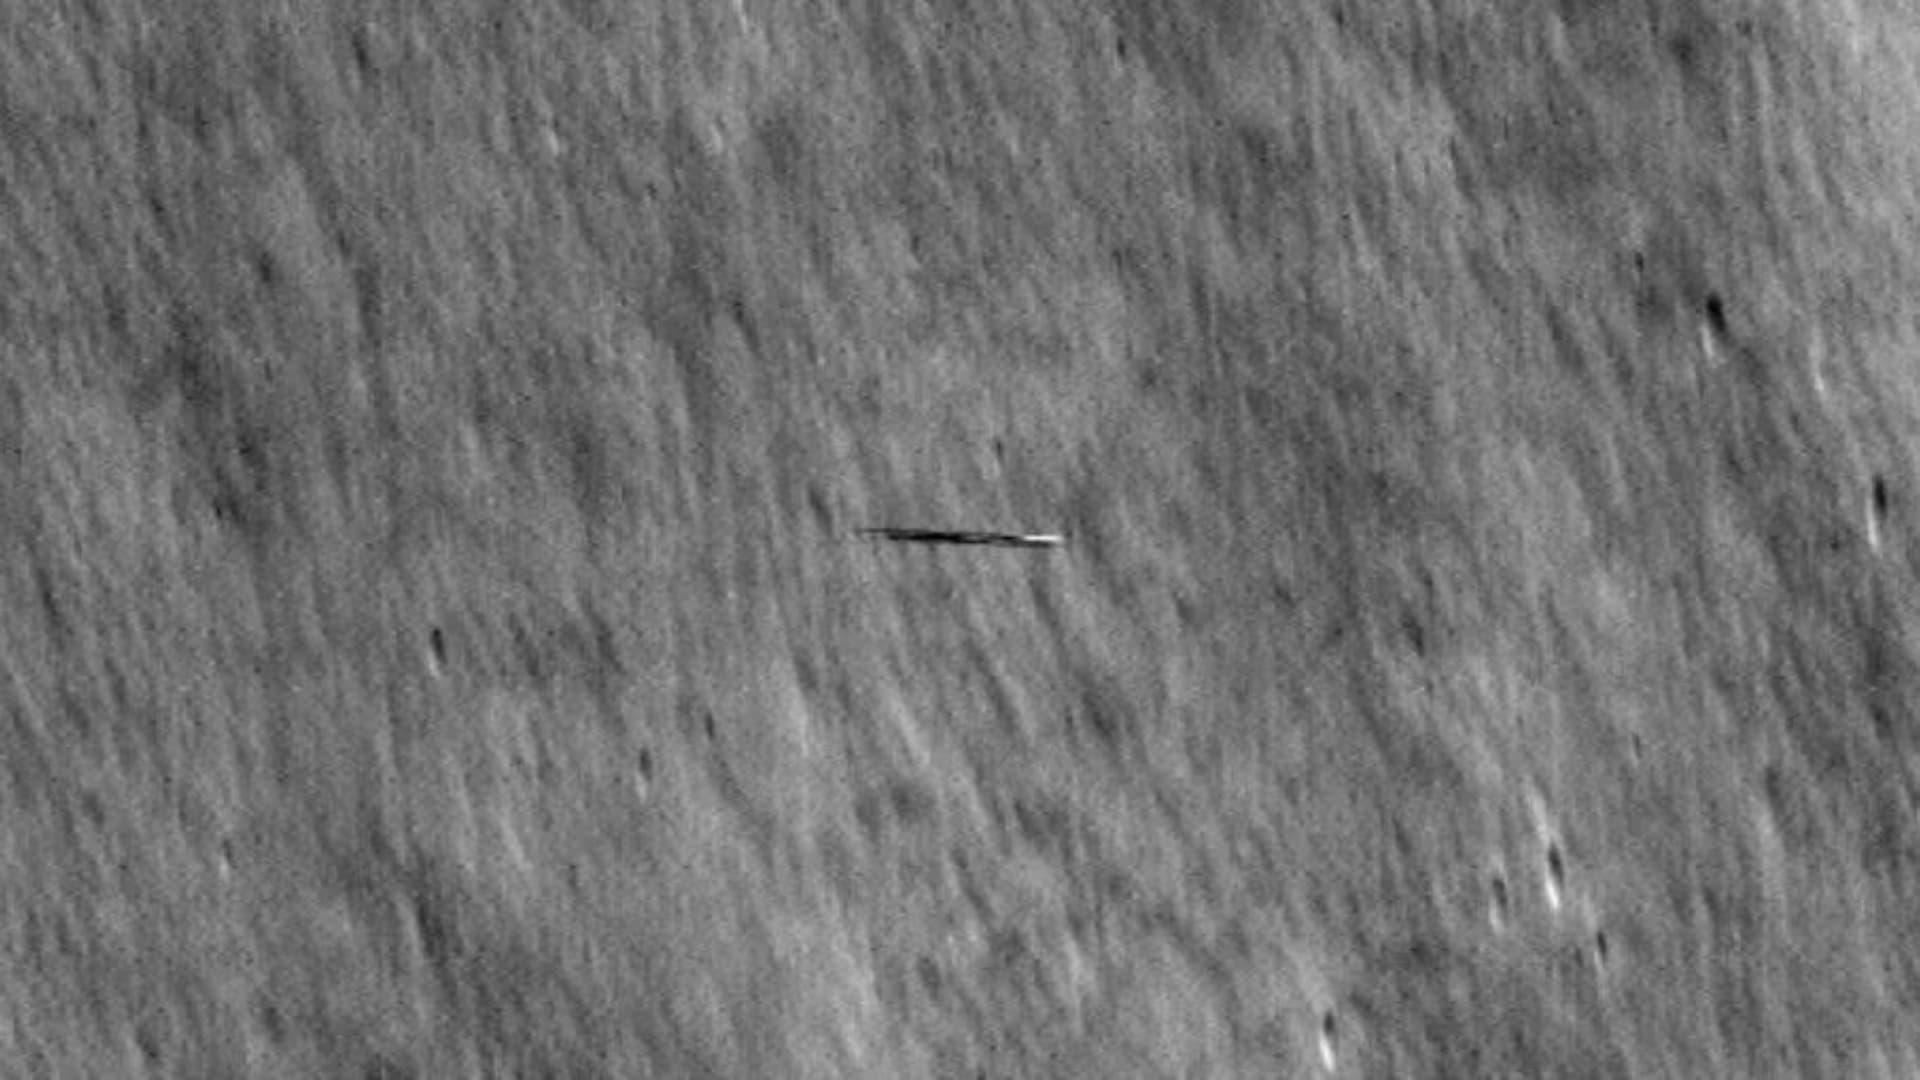 Nasa flagrou imagem de objeto que se parece com uma prancha de surf na Lua (NASA)